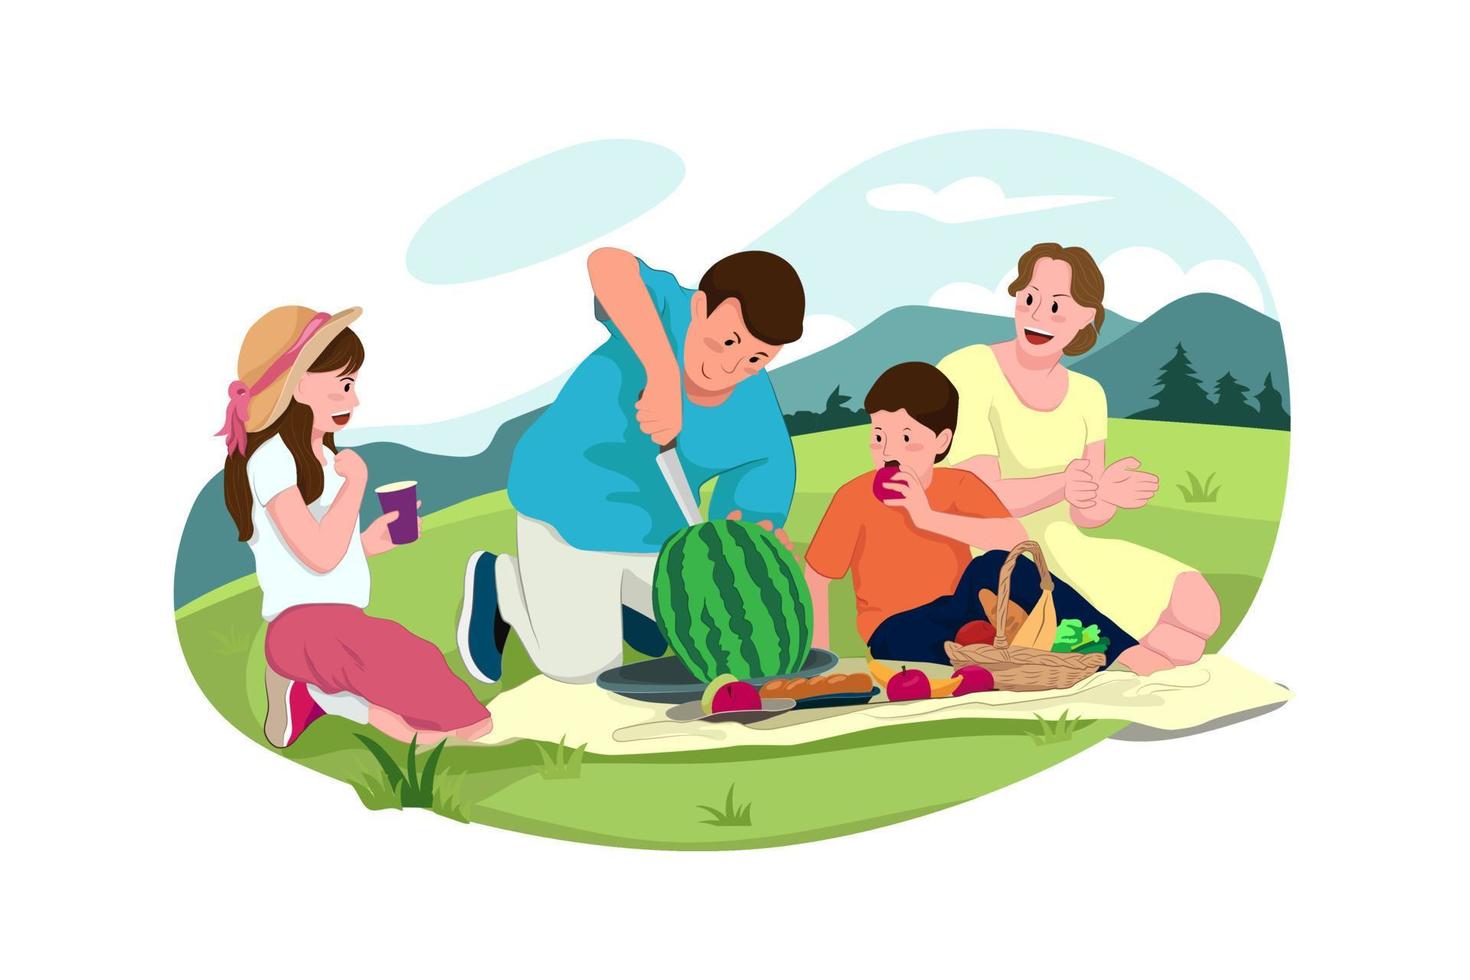 Familie beim Picknick. männliche, weibliche Charaktere, Kinder und Erwachsene bei einem Picknick mit frischem Gemüse. gesunde ernährung, bio-lebensmittelkonzept vektor